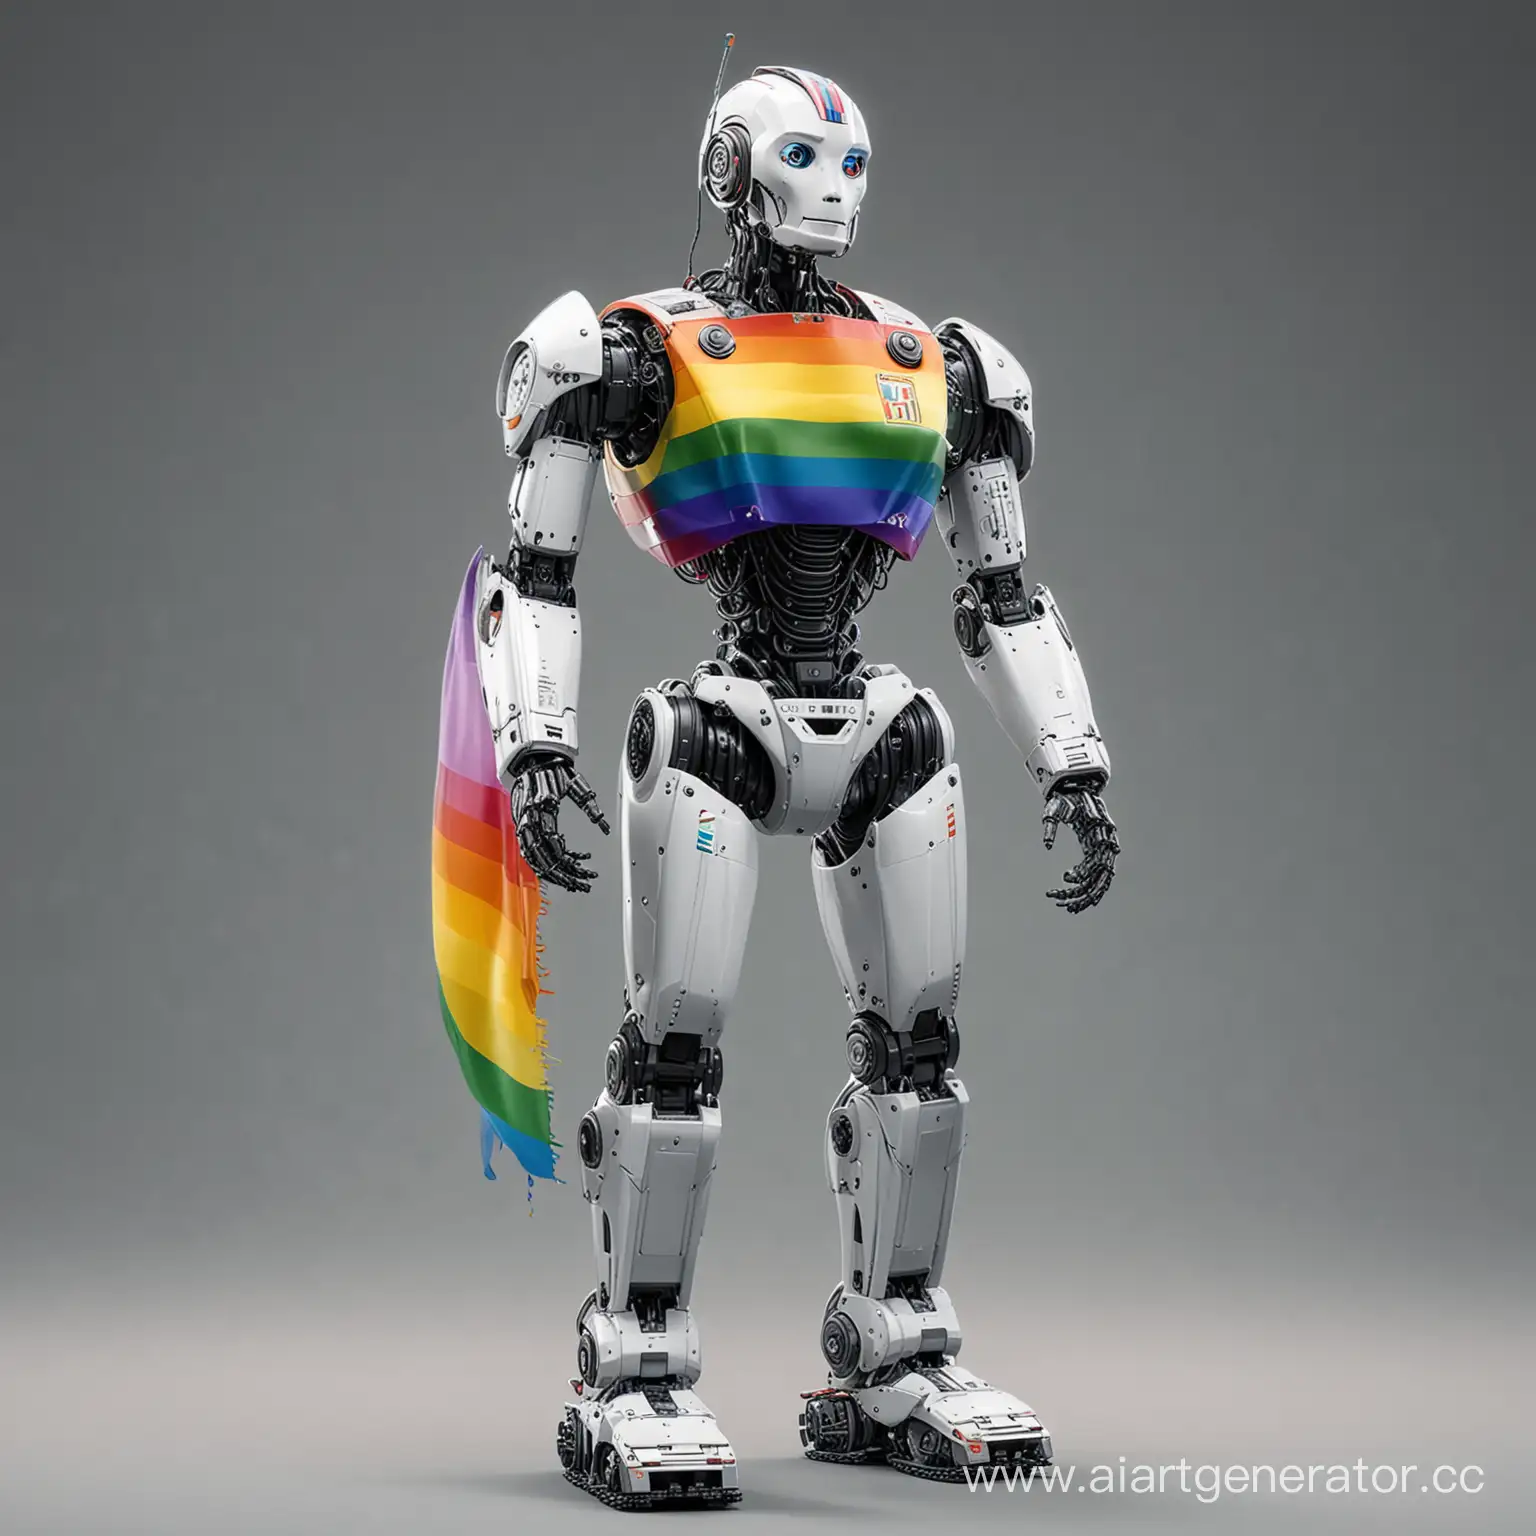 Робот во весь рост с флагом ЛГБТ на груди